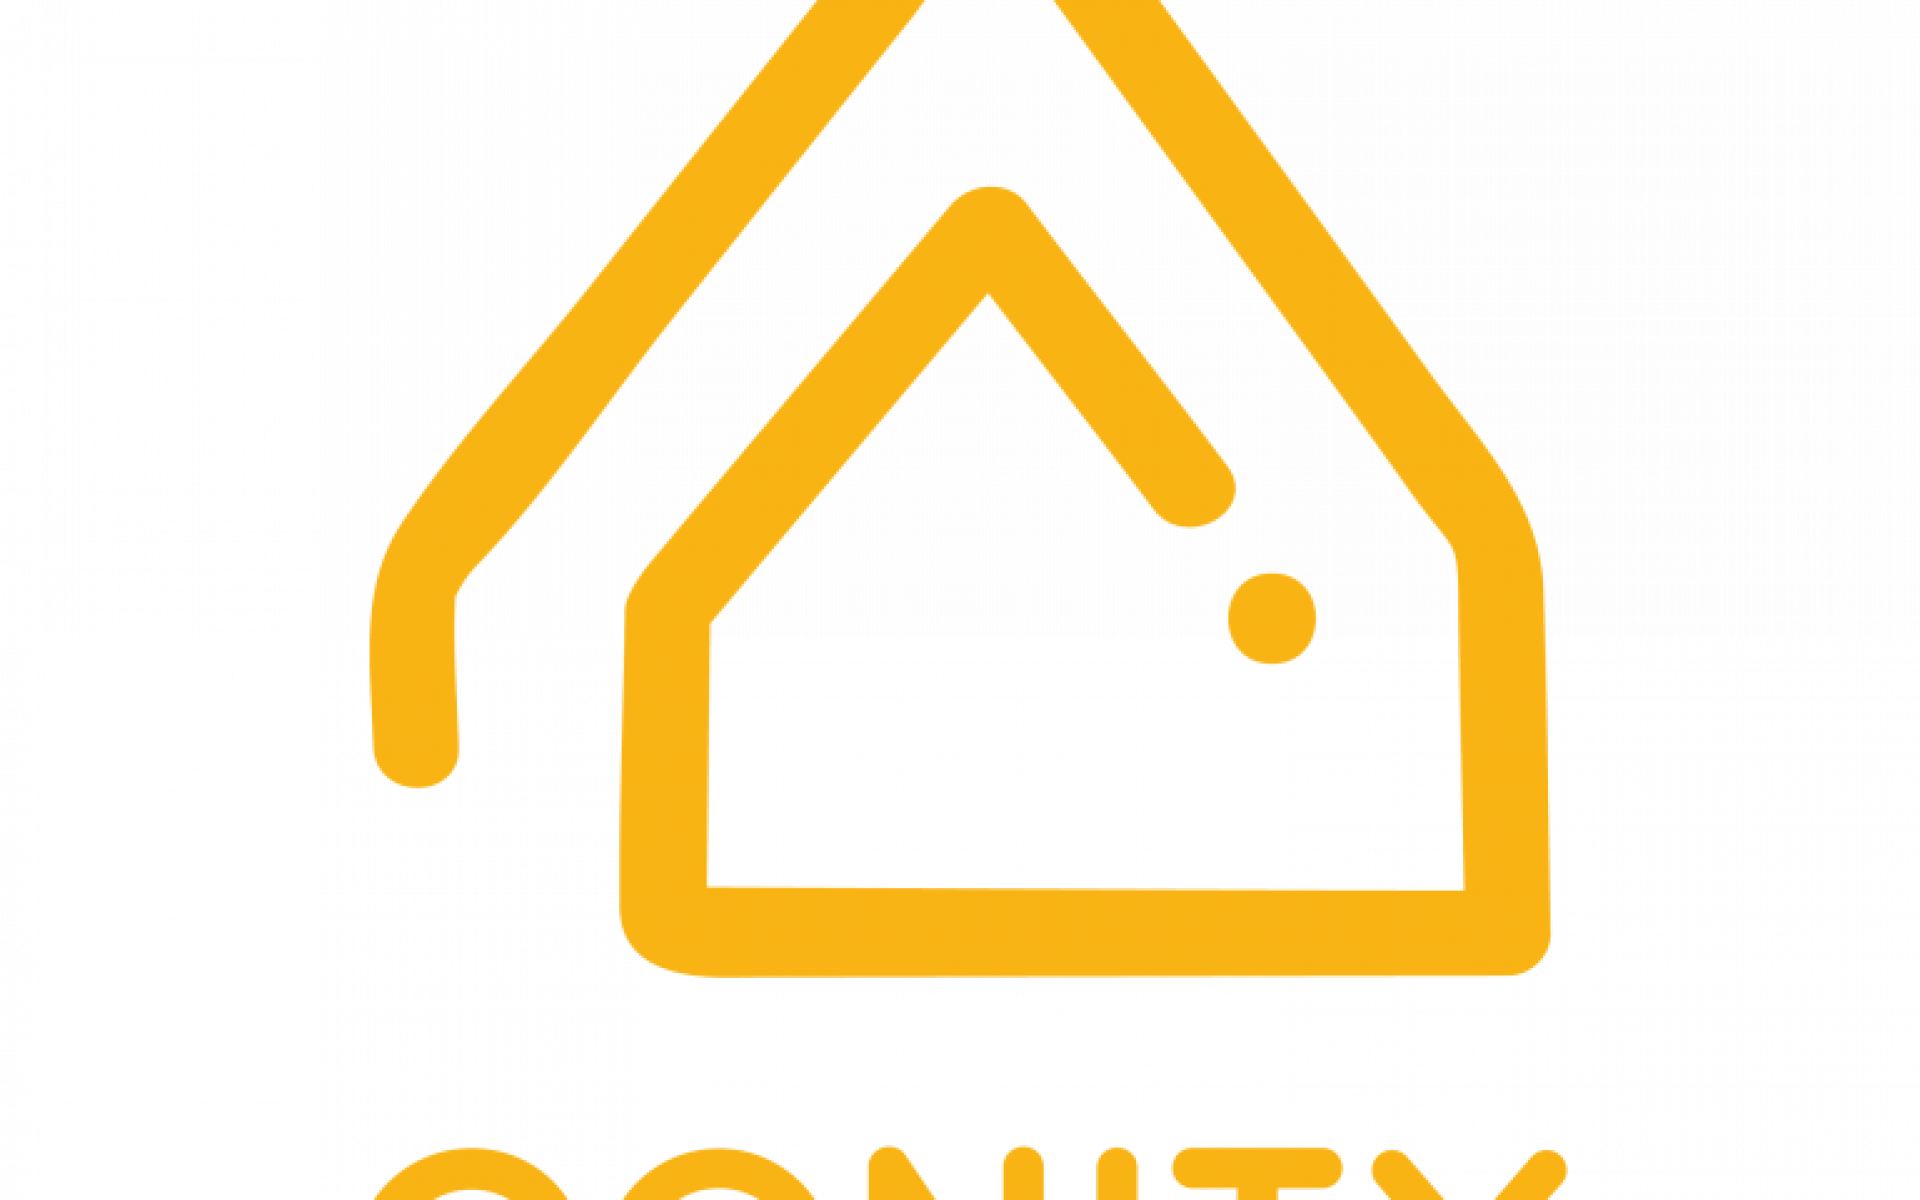 logo conity hd 769x768